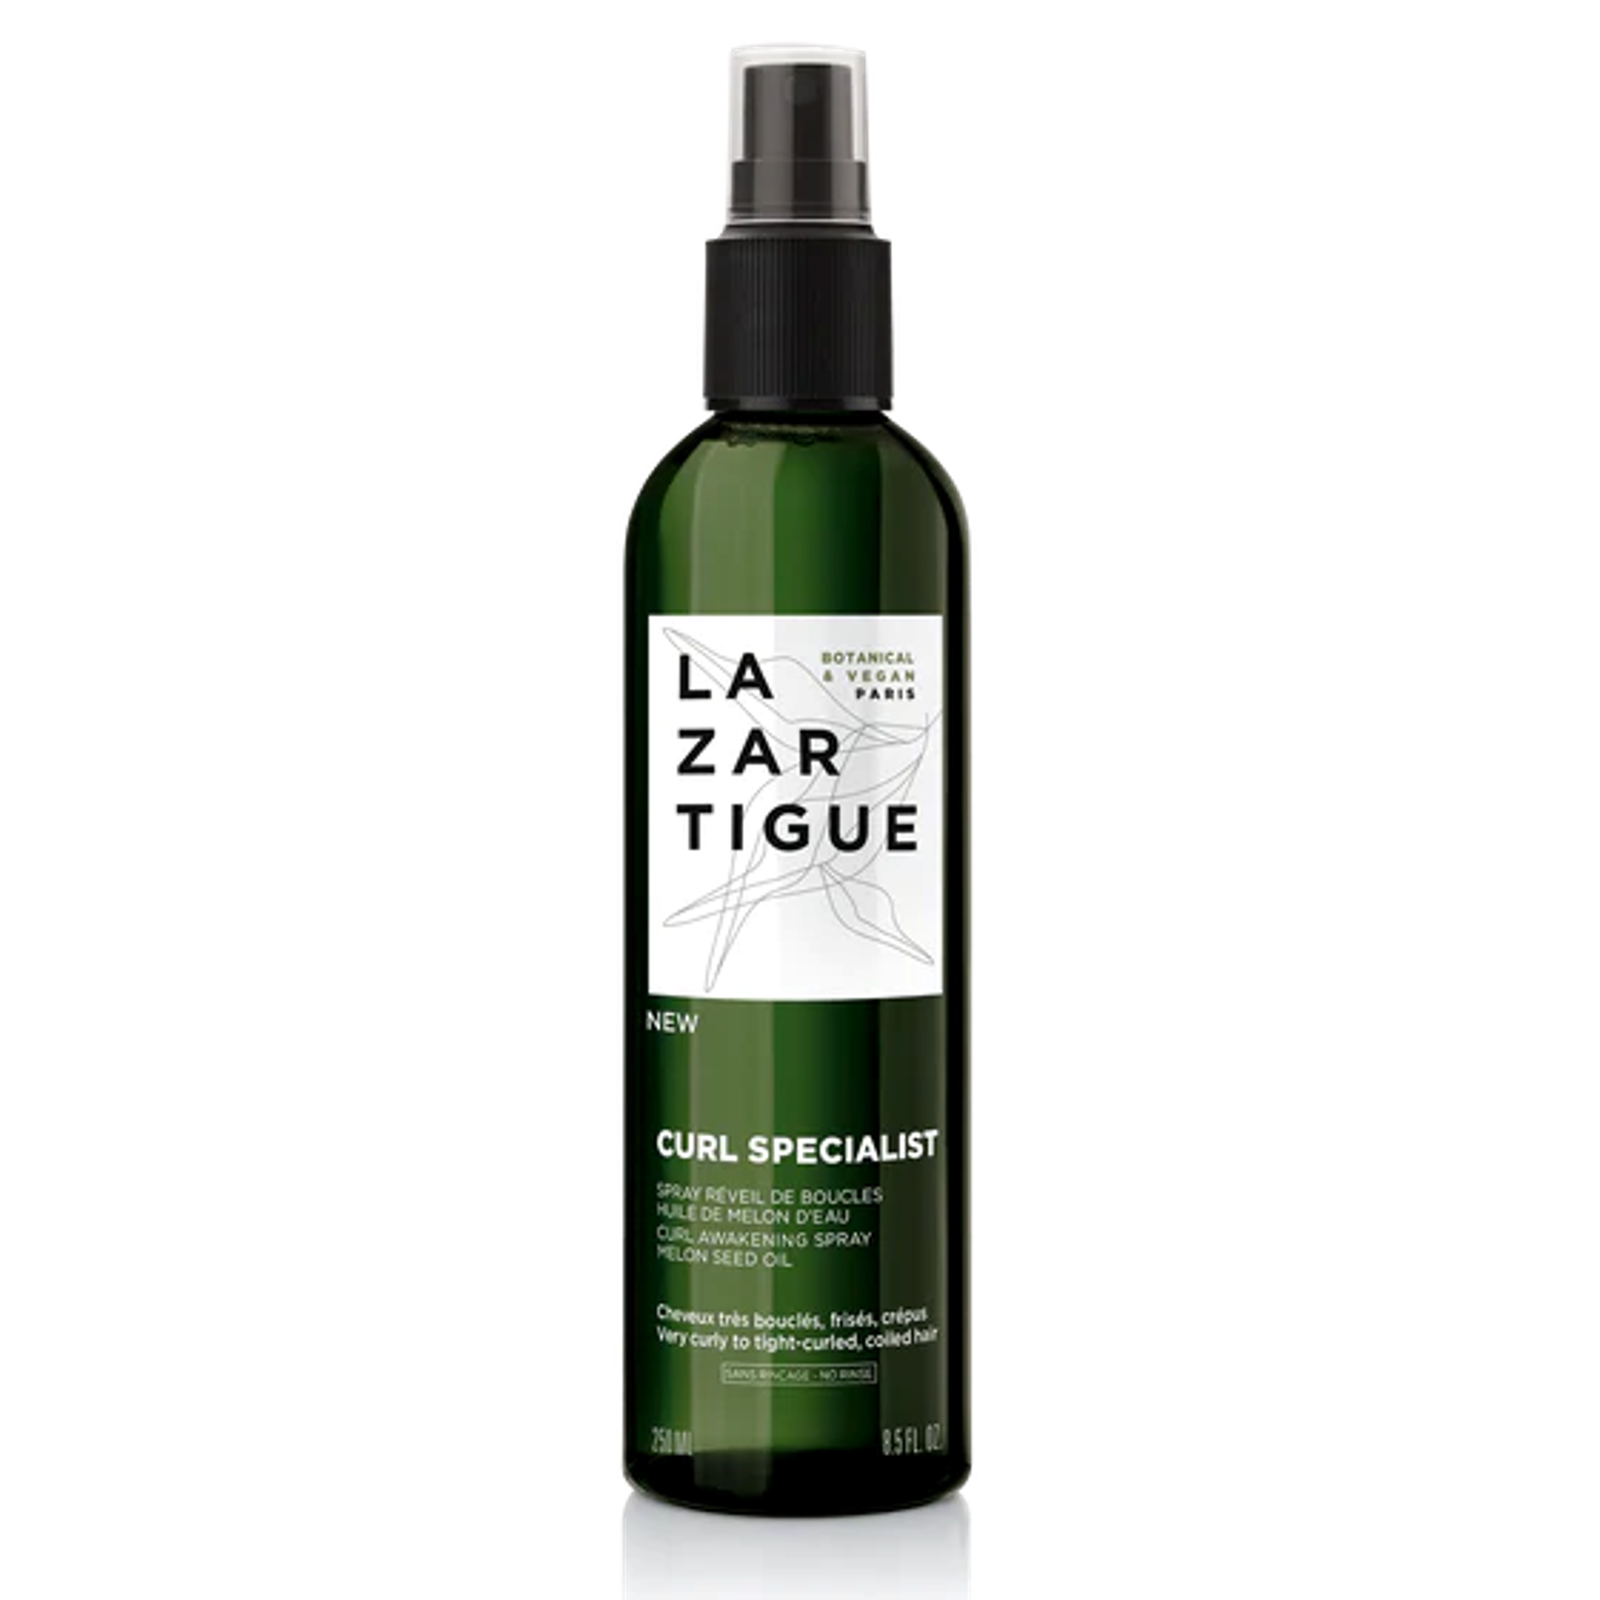 Imagen del Spray Curl Specialist de Lazartigue: un producto natural para rizos definidos y saludables